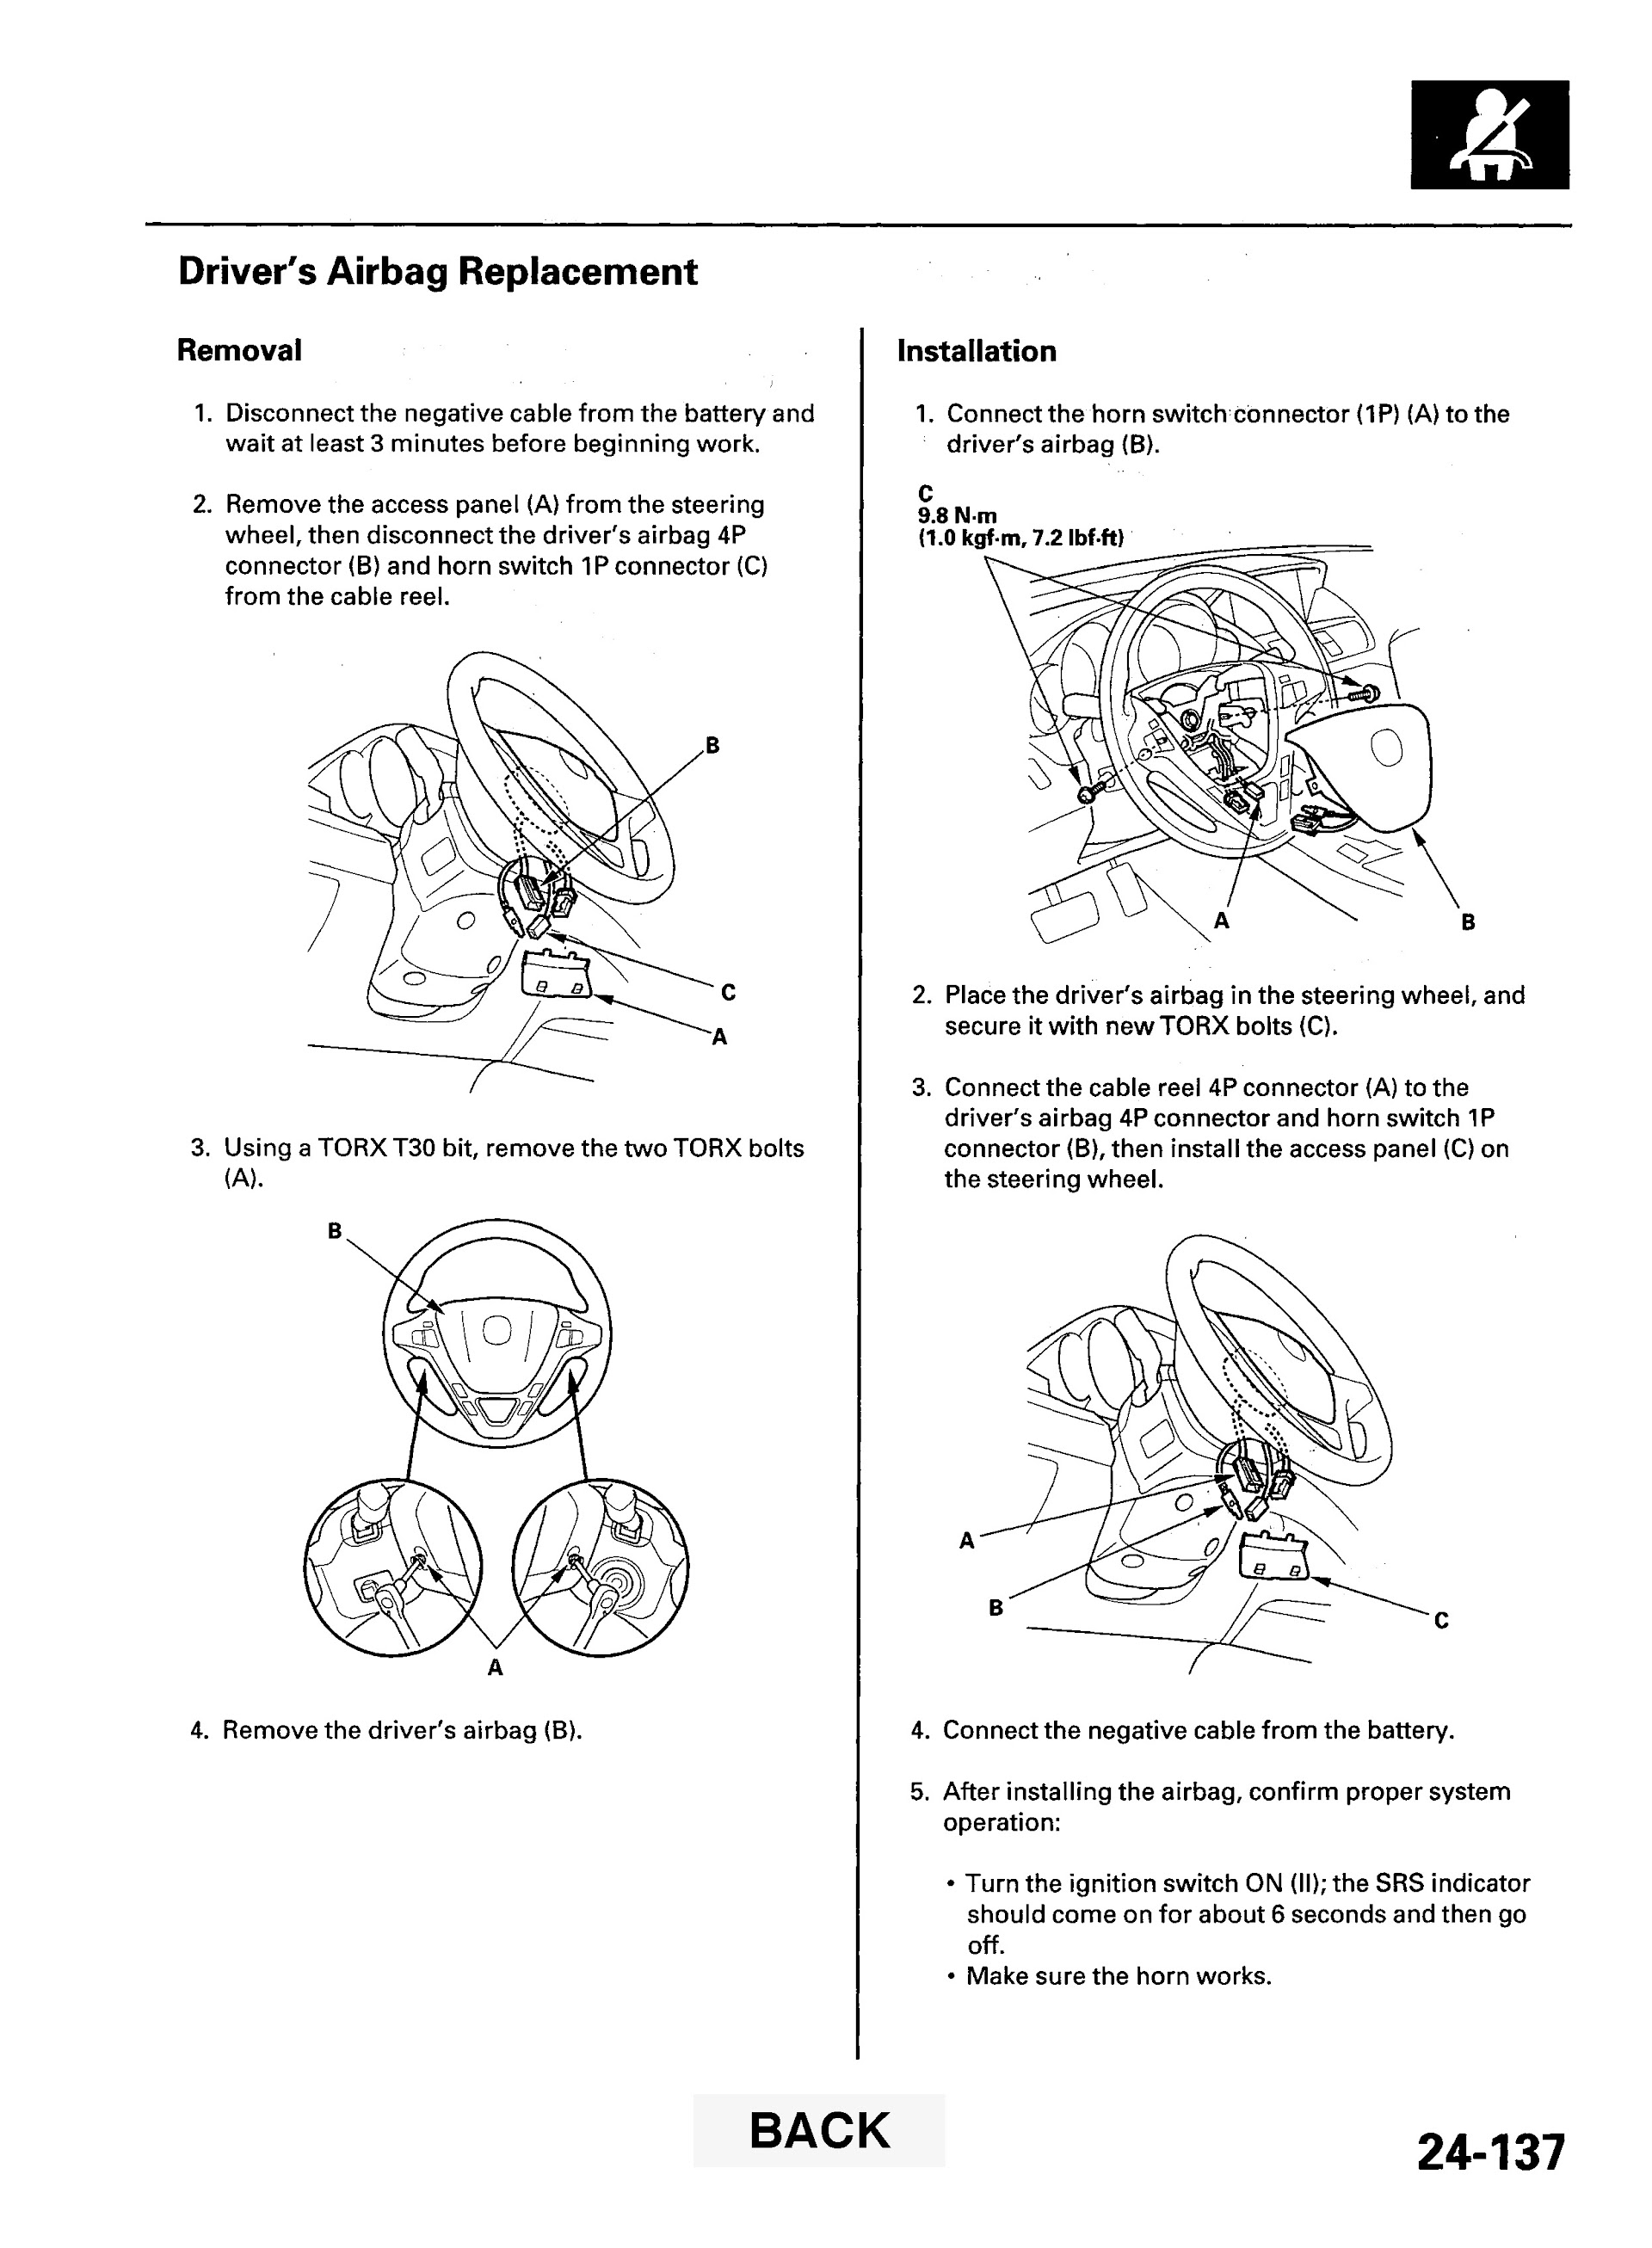 2009 Acura MDX Repair Manual, Airbag Replacement